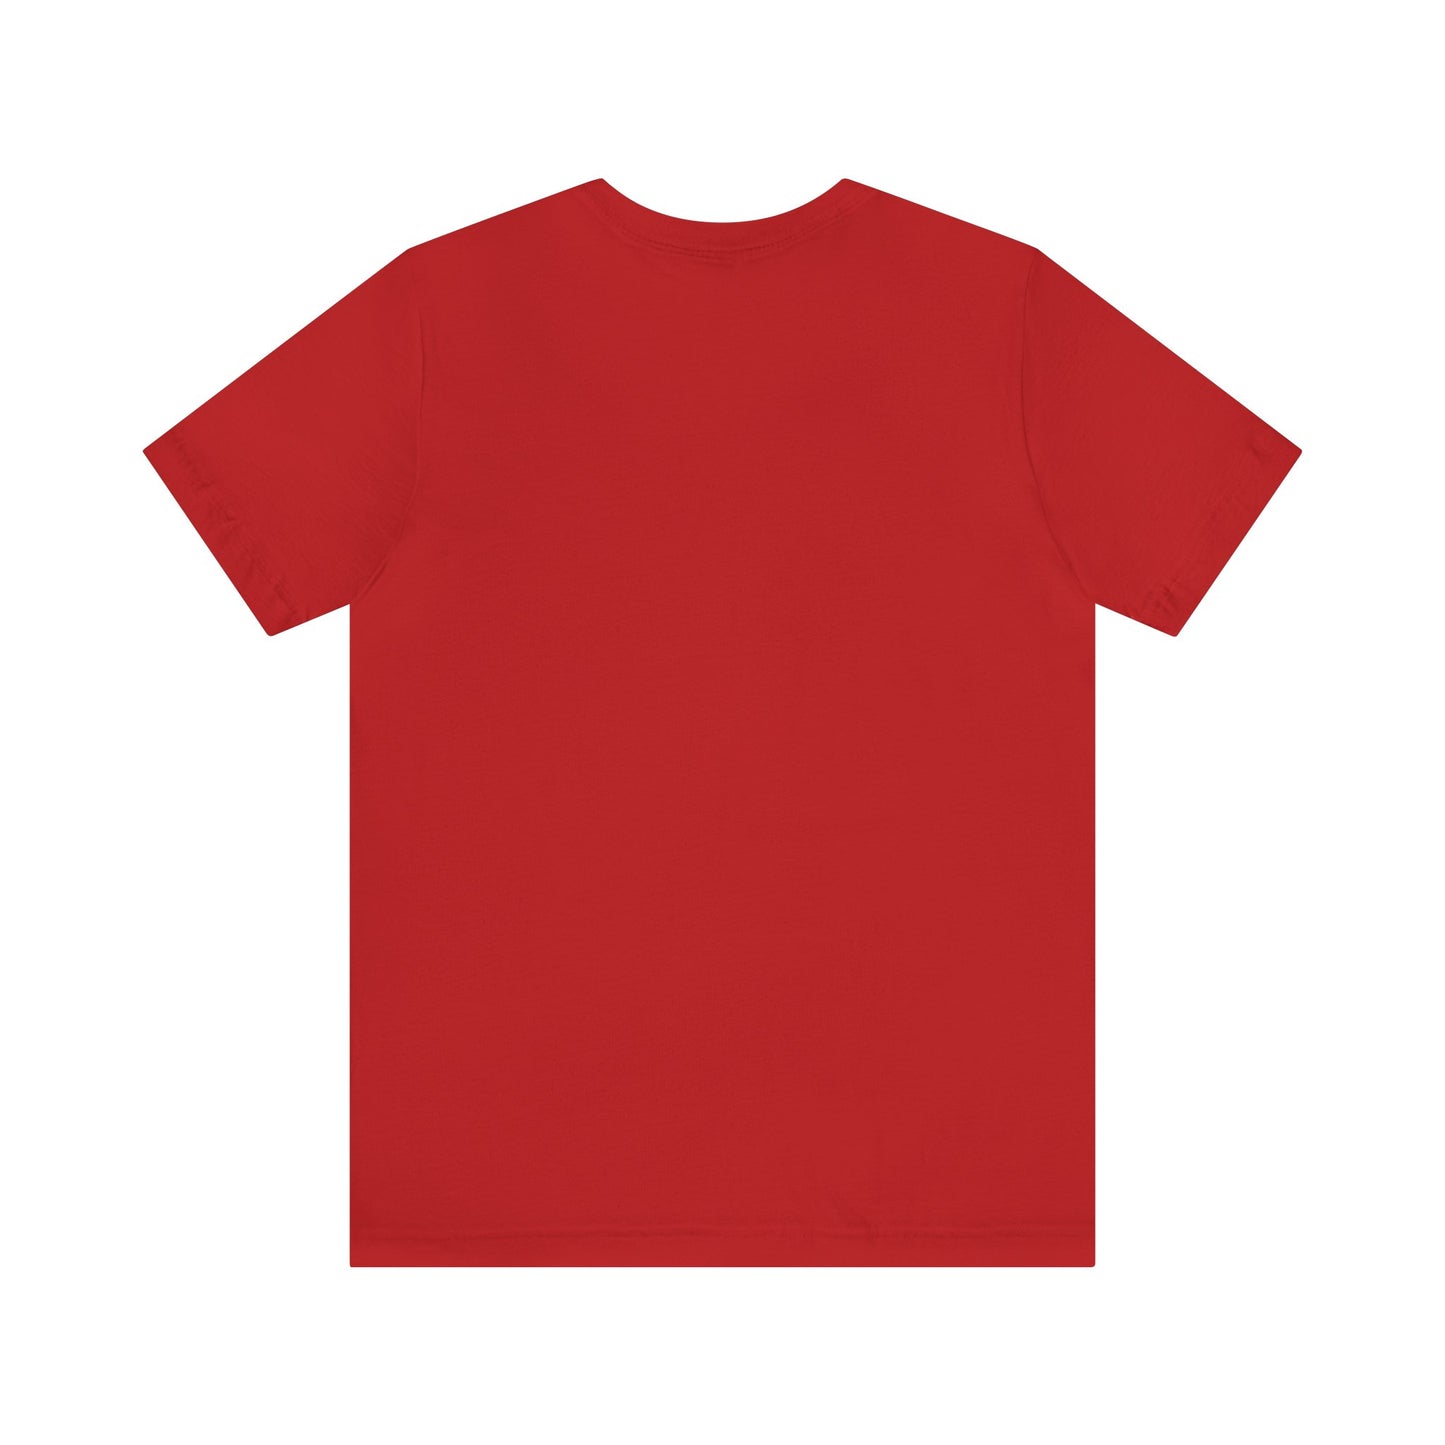 Wonder Wieners Adventure Classic Tshirt| Red